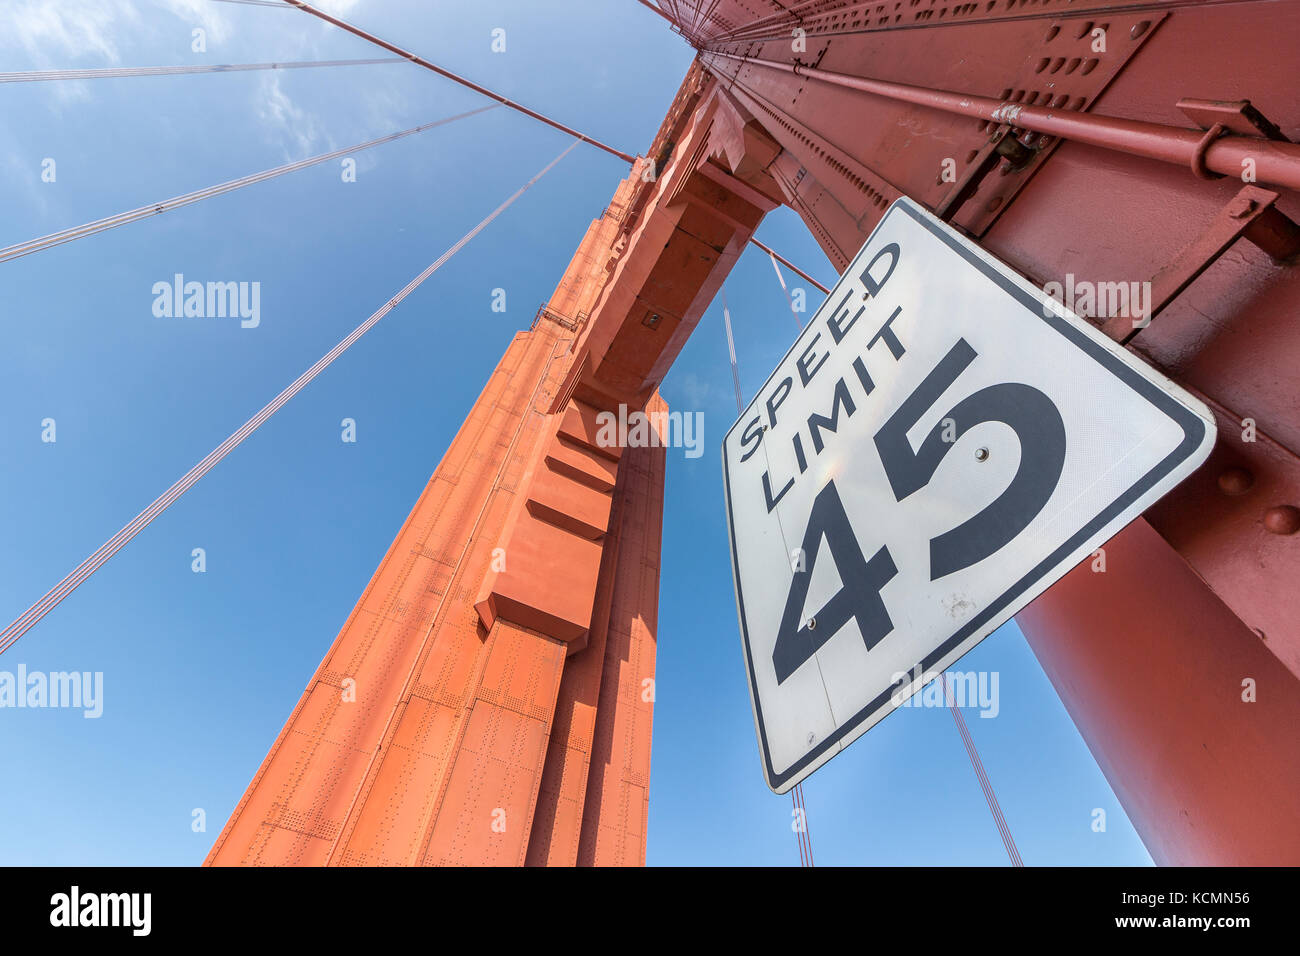 Vue de dessous de la golden gate bridge structure avec le signe de la limite de vitesse à 45 miles de près. Banque D'Images